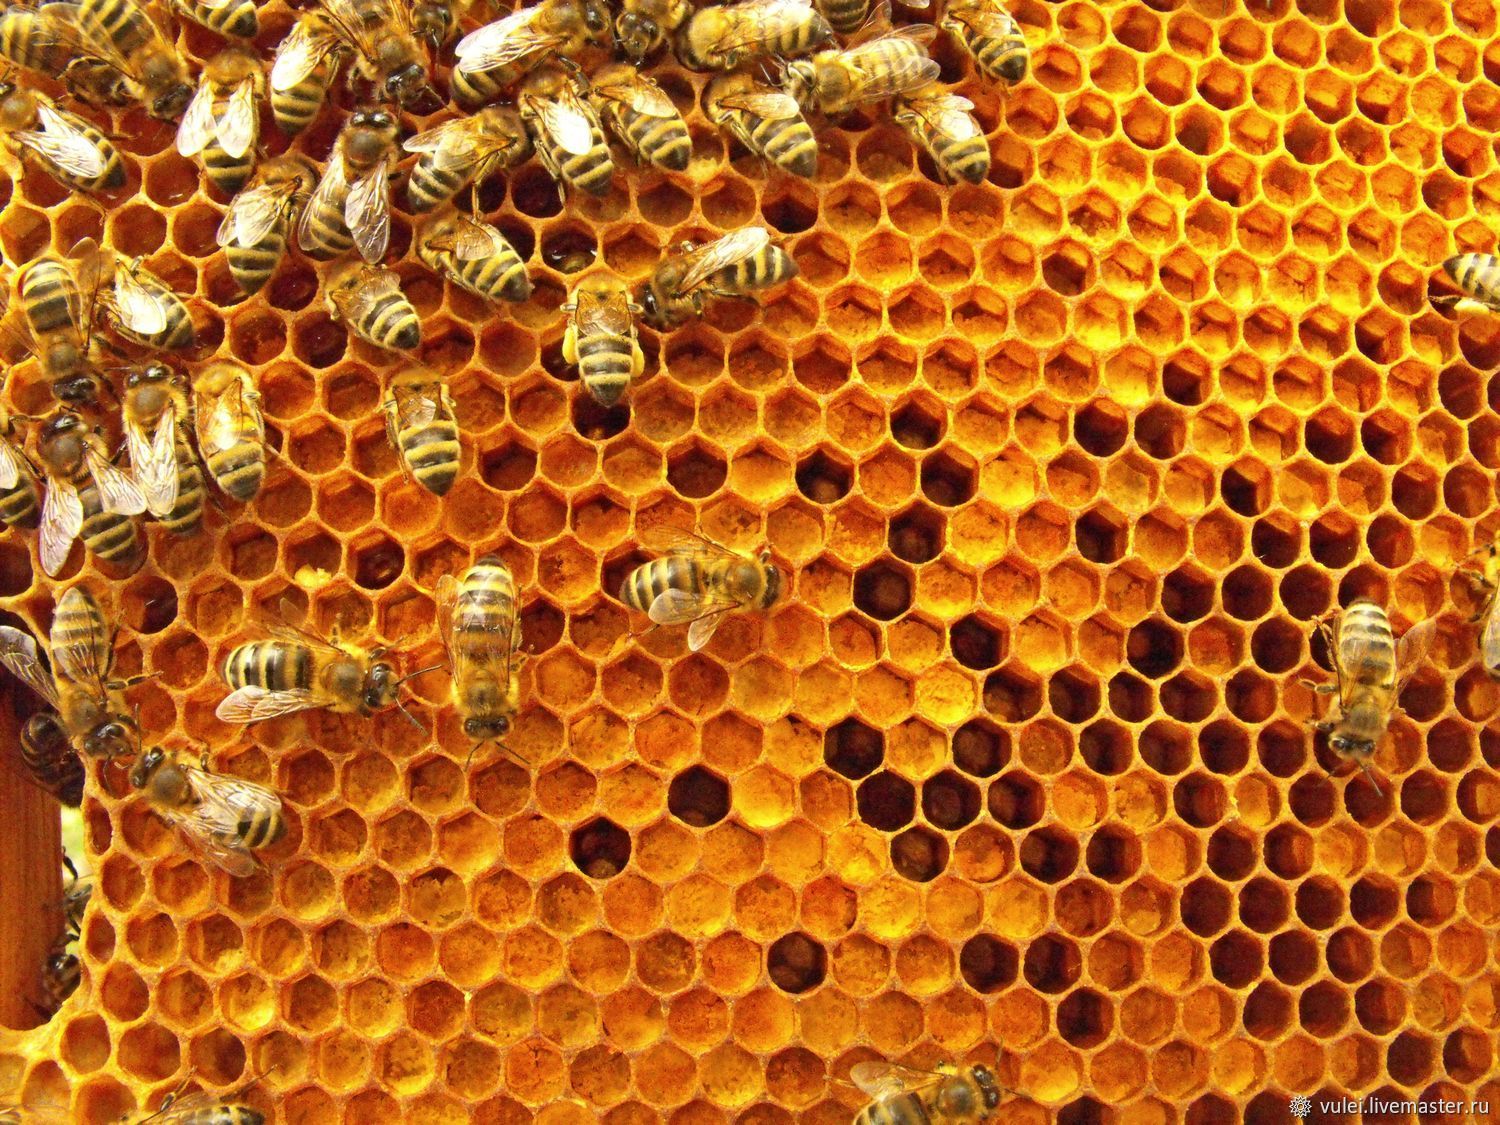 Купить Пергу Пчелиную В Аптеке Цена